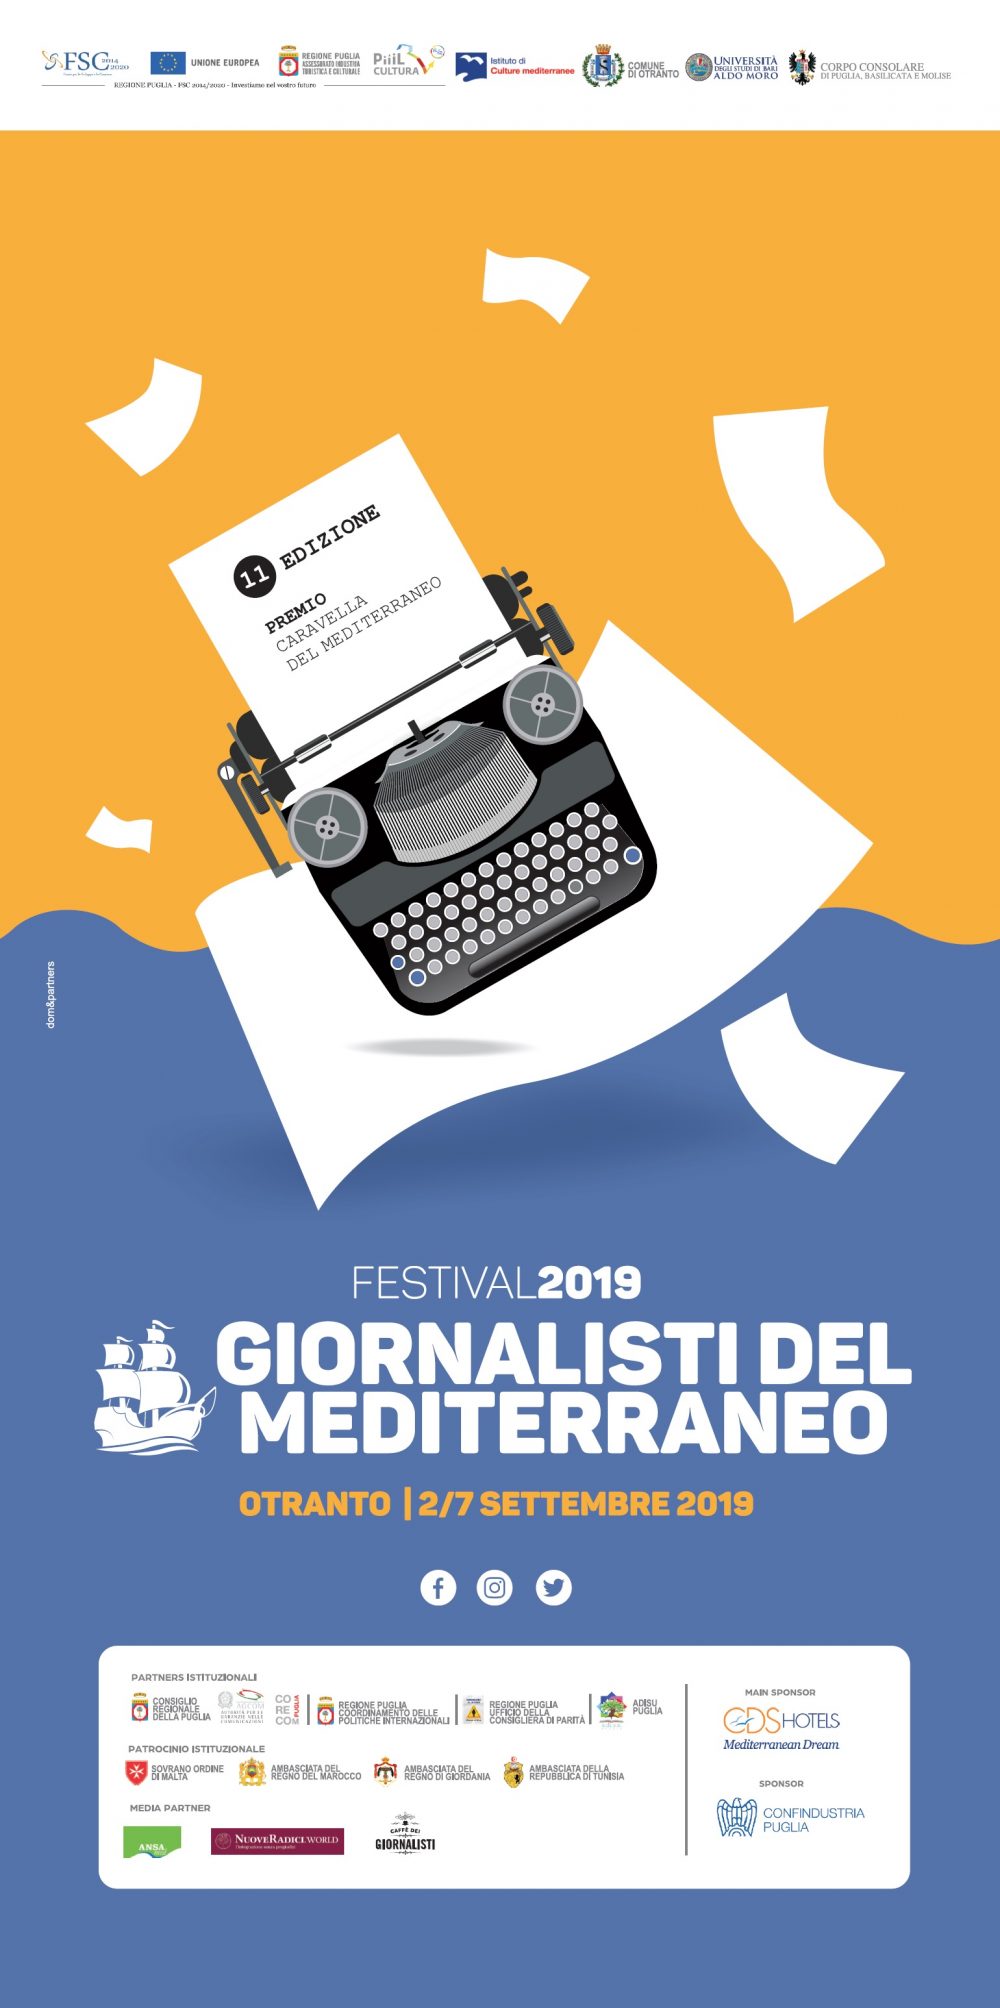 L’Adisu Puglia partecipa all’11^ Festival dei Giornalisti del Mediterraneo